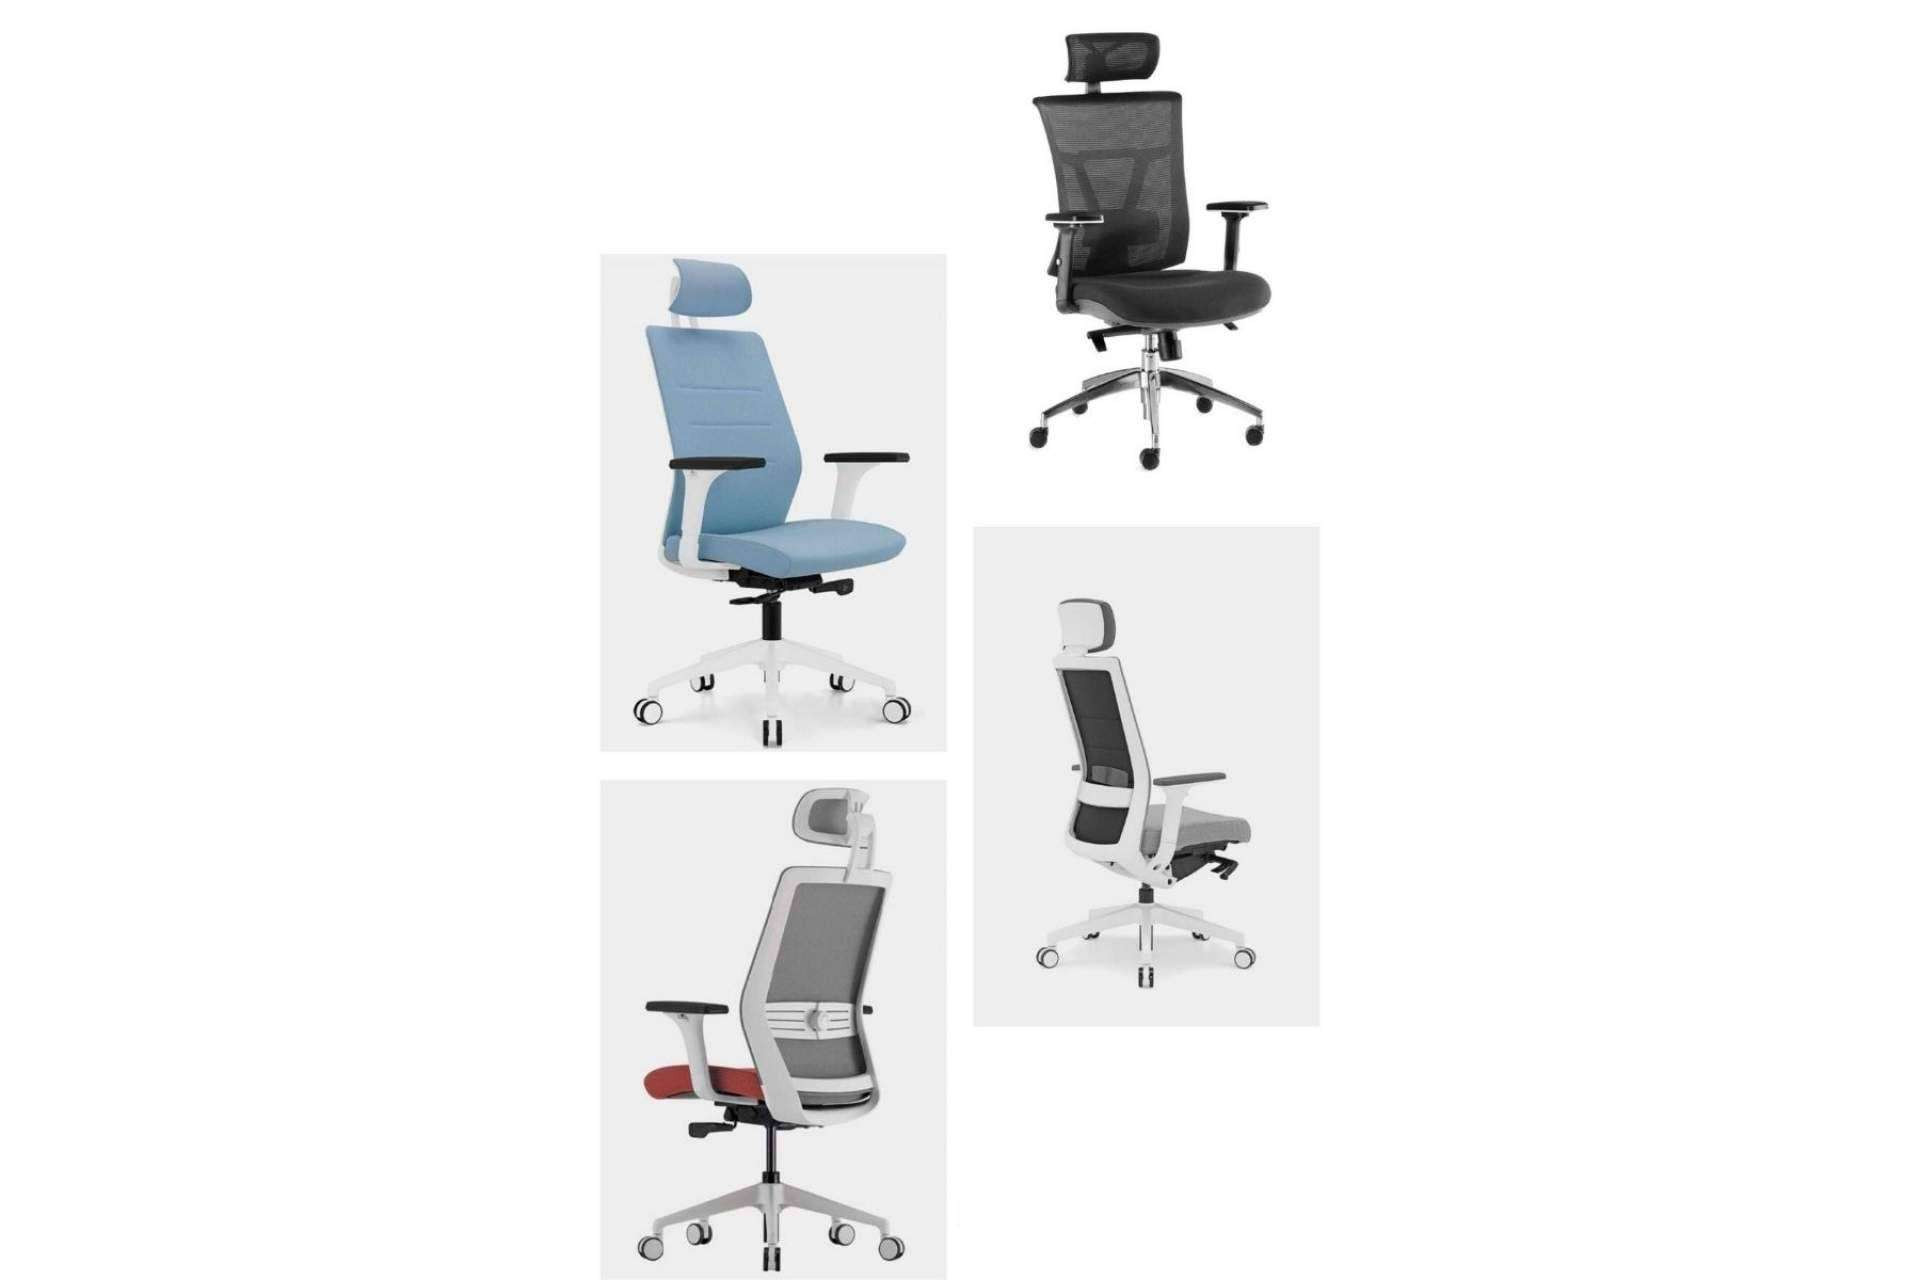  Las sillas ergonómicas favorecen la salud de la columna en la oficina: Officedeco 